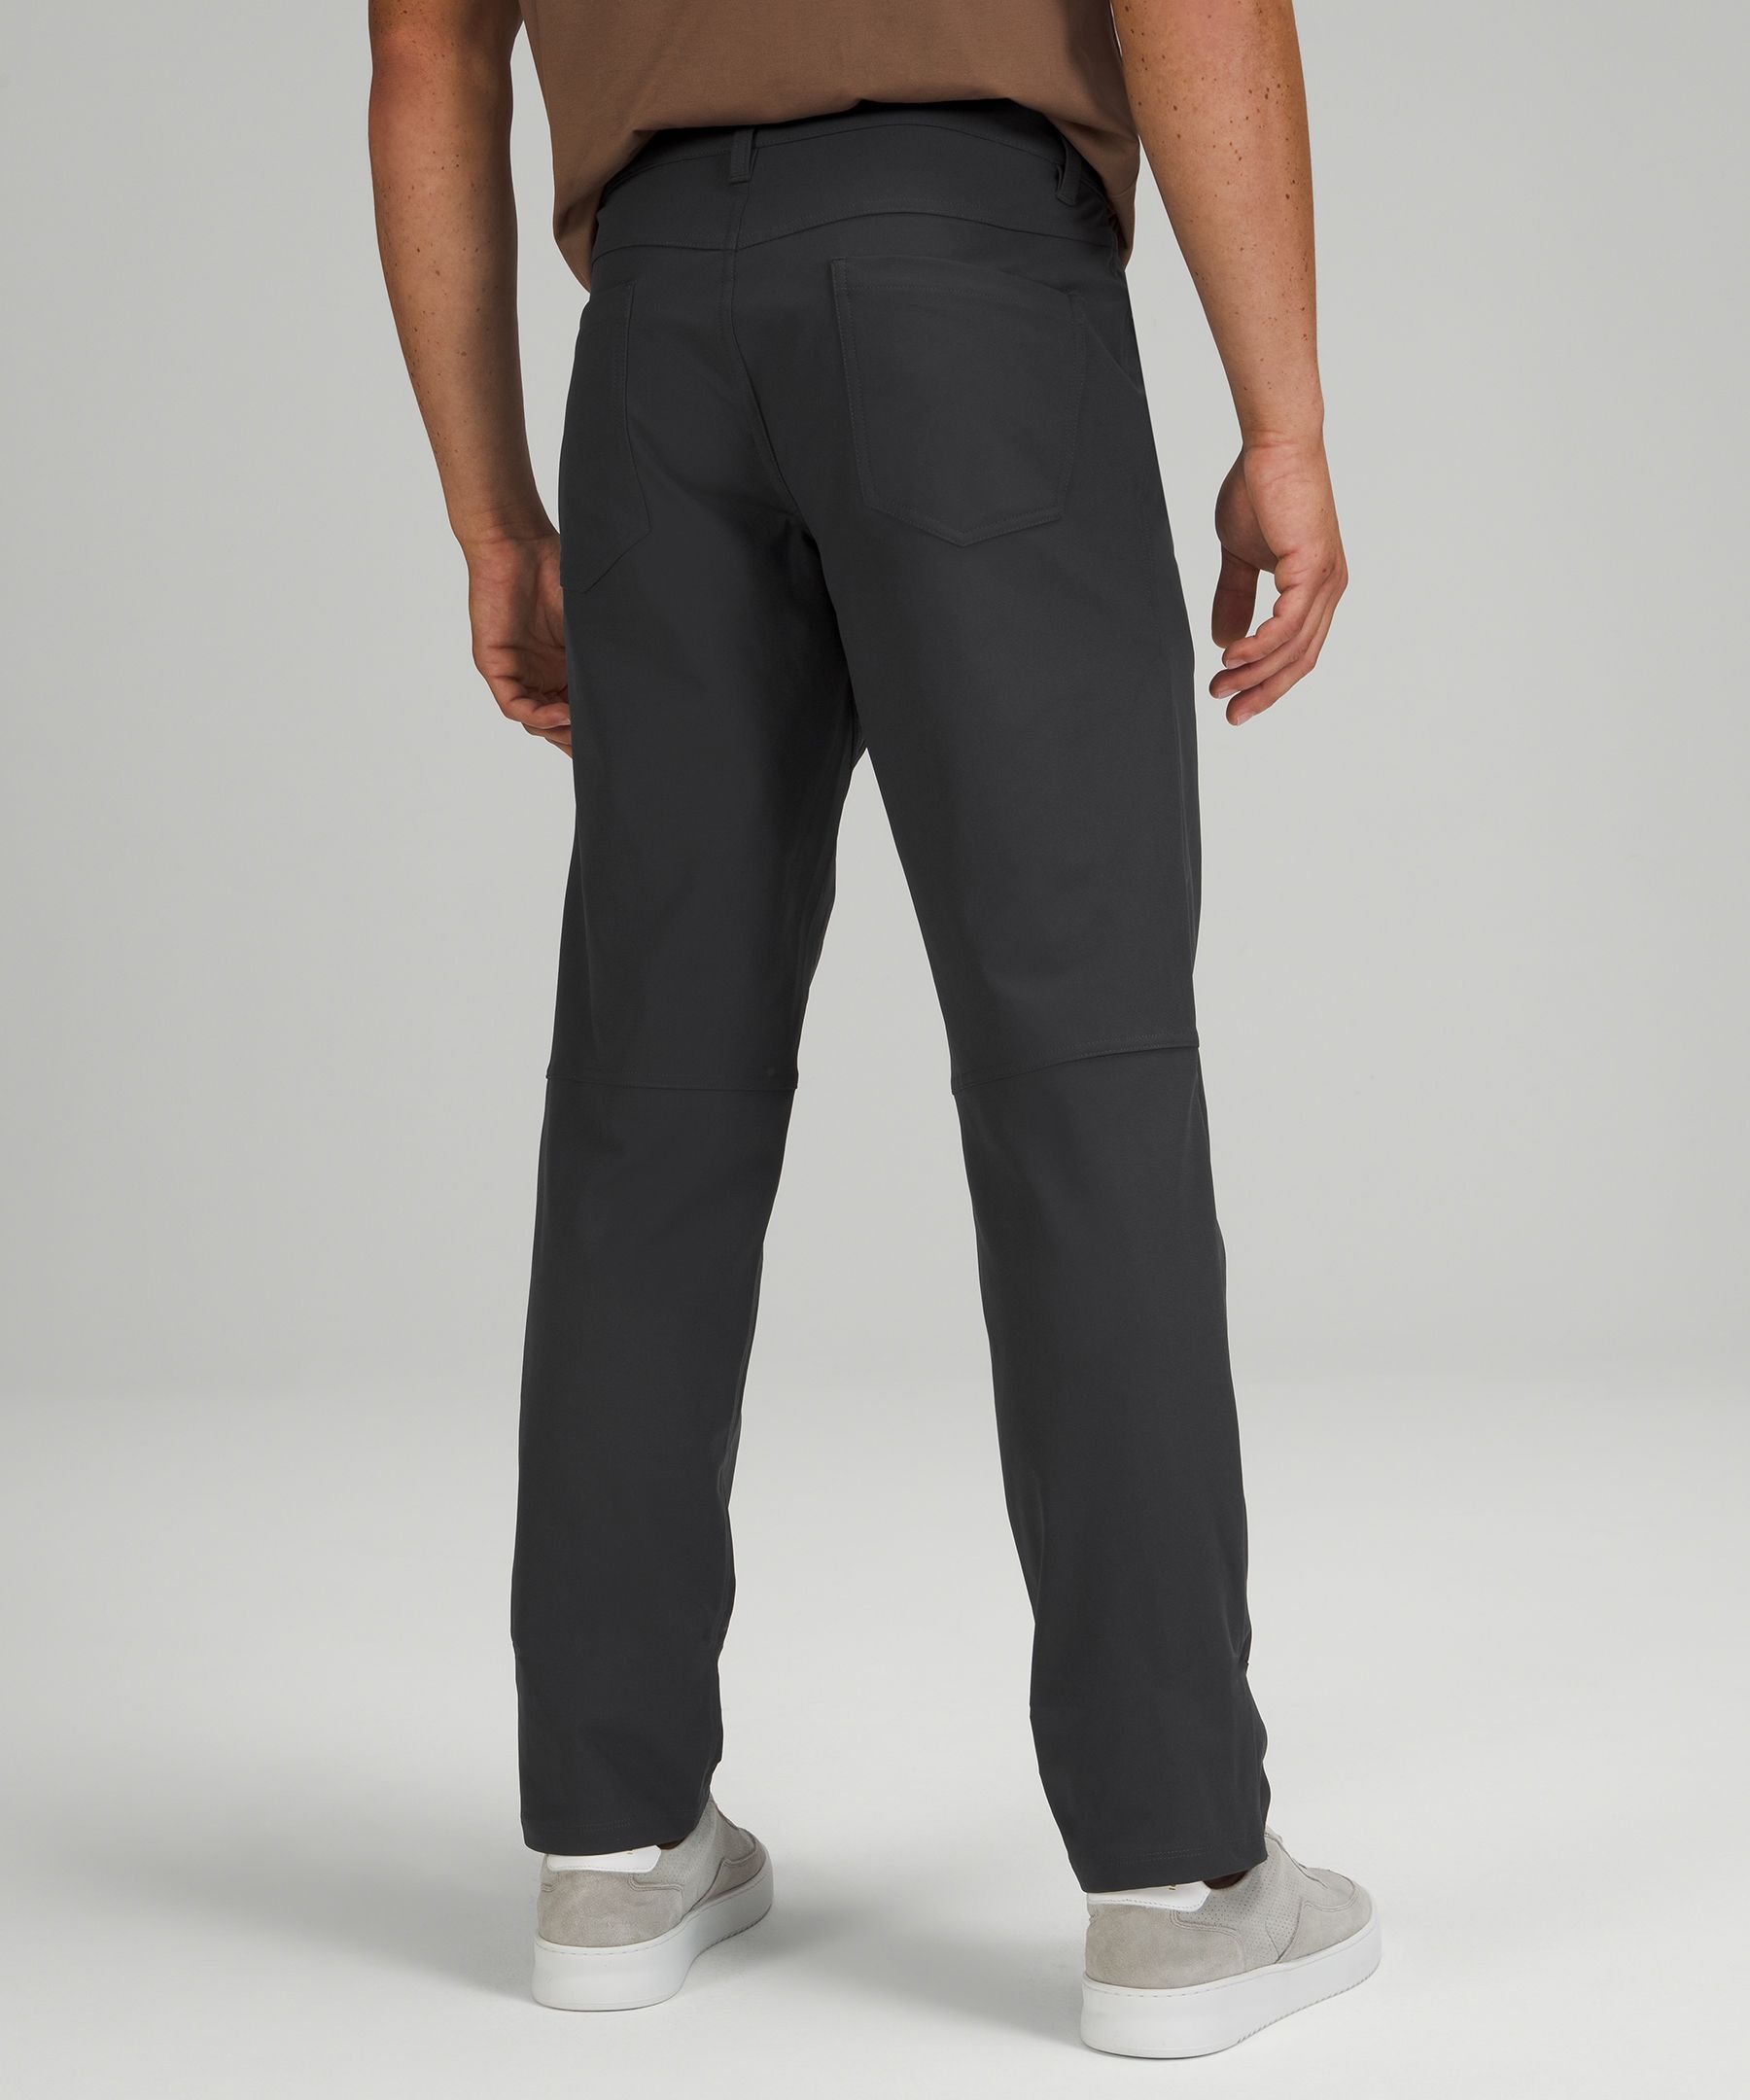 ABC Classic-Fit 5 Pocket Pant 30"L *Warpstreme | Men's Trousers